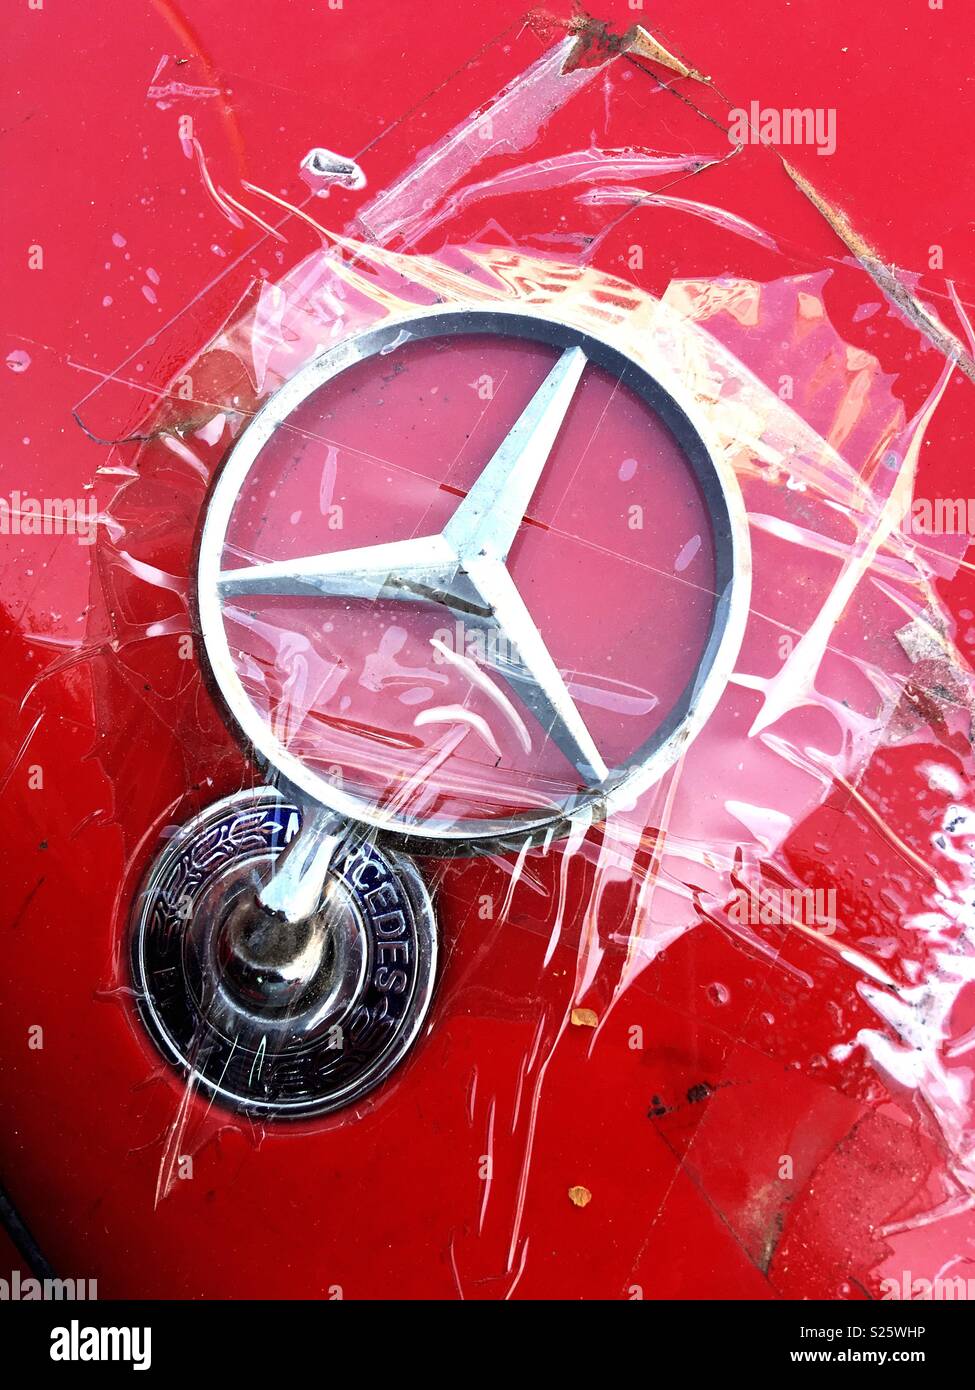 Eine gebrochene Mercedes Benz Star Logo auf der Motorhaube von einem roten Daimler, mit durchsichtigem Klebeband befestigt Stockfoto